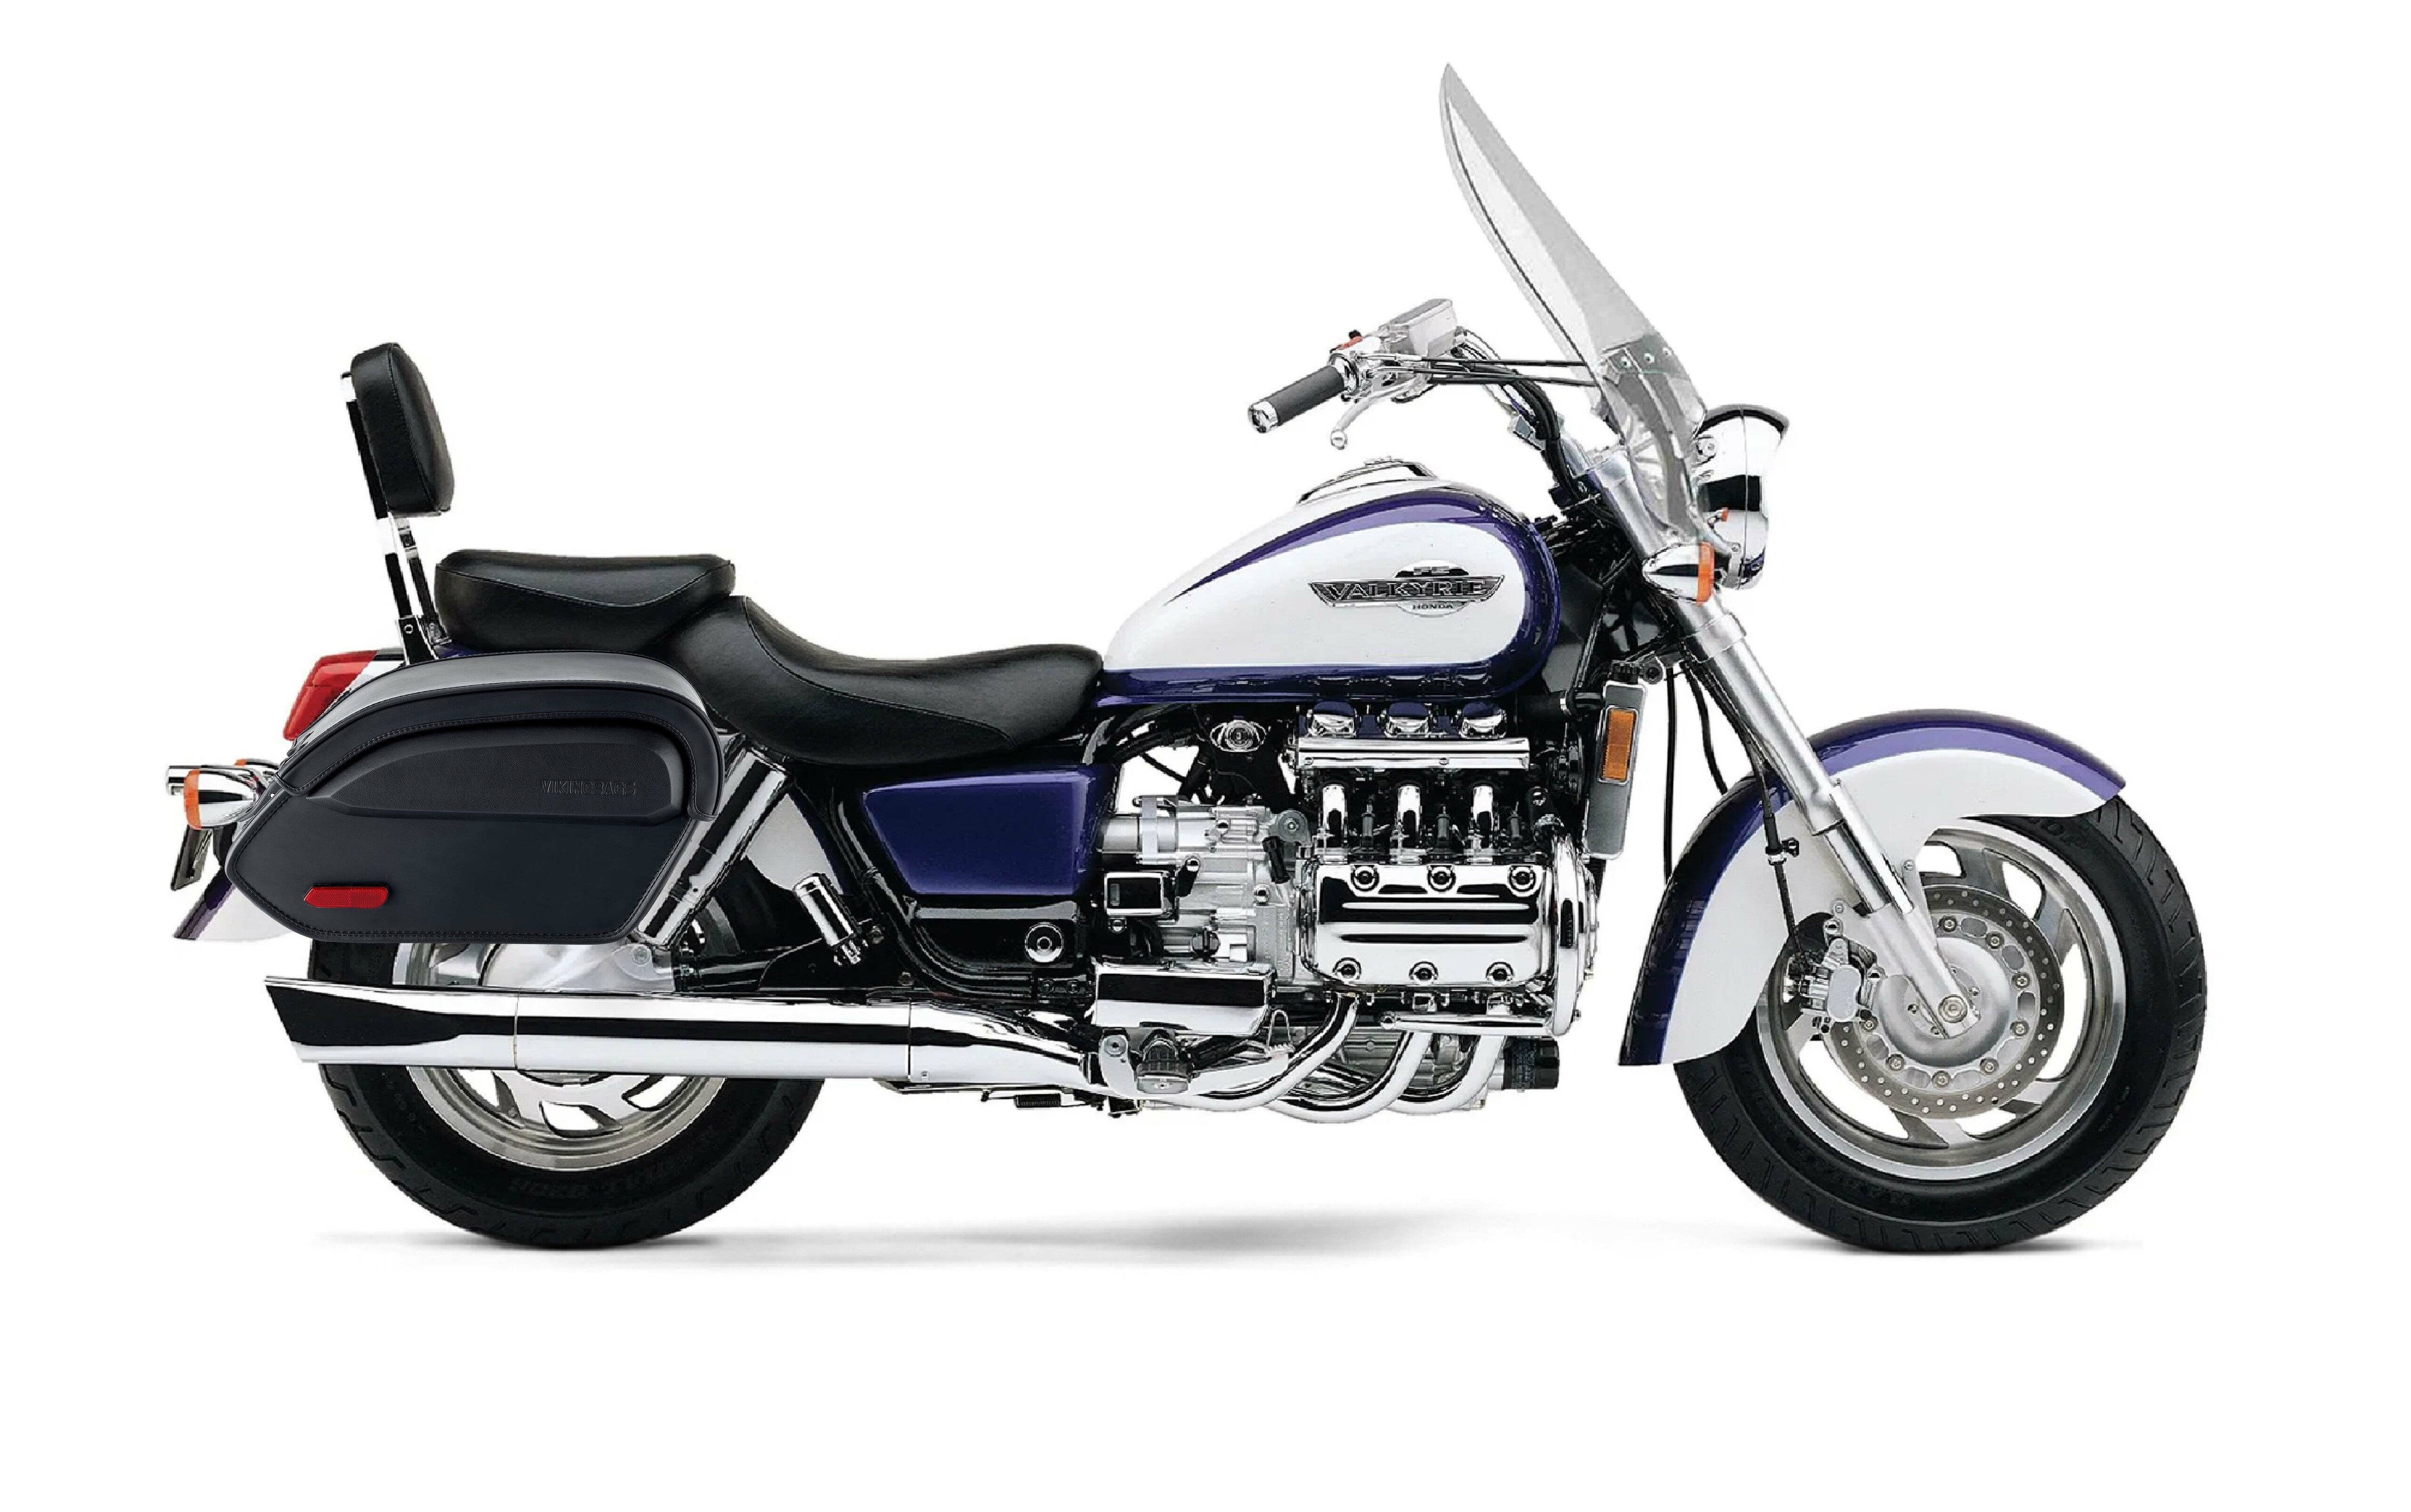 Viking Aviator Large Honda 1500 Valkyrie Tourer Leather Motorcycle Saddlebags on Bike Photo @expand